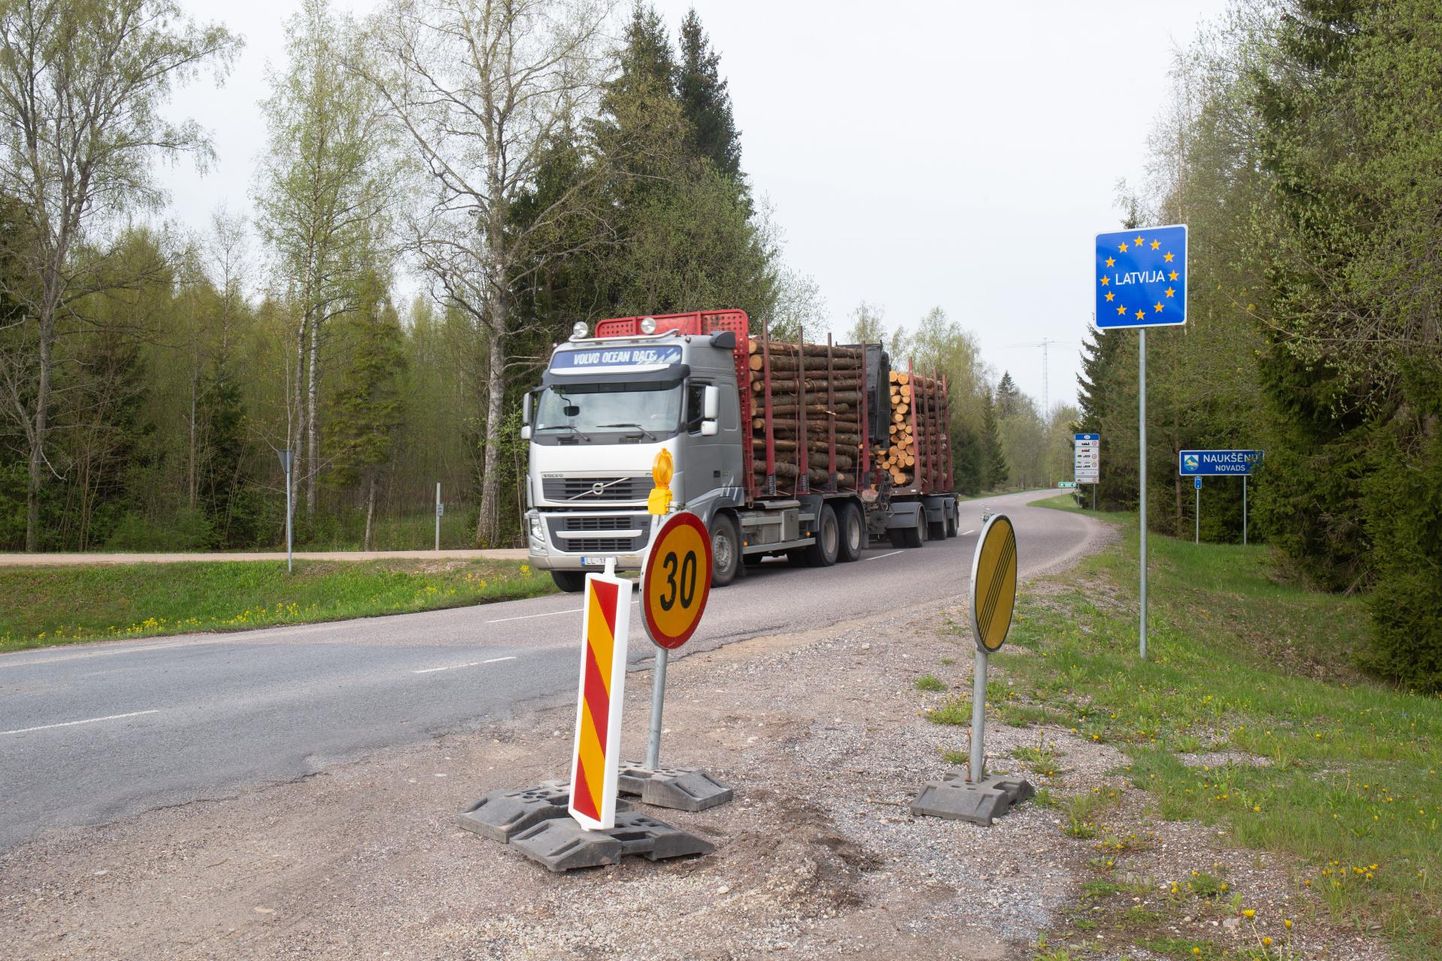 Ainsad hommikuse tunni jooksul lõunanaabrite poolt tulnud sõidukid olid kaks Läti numbrimärkidega metsaveoautot.